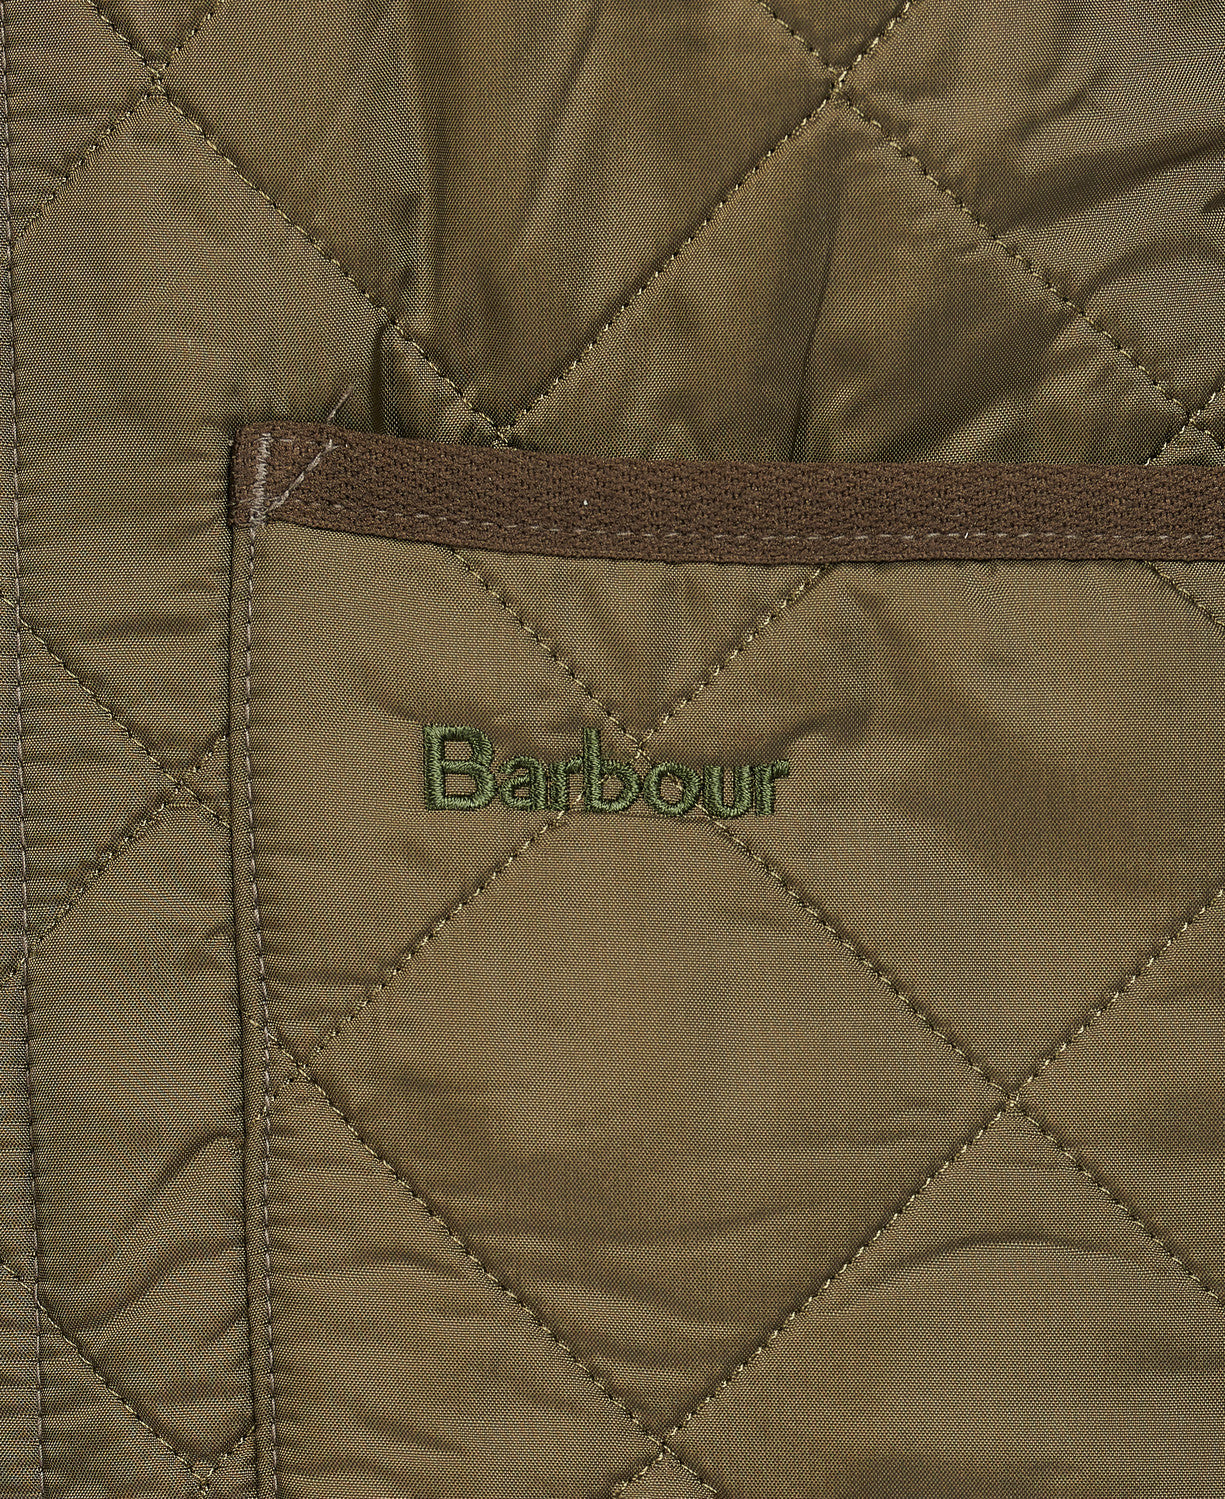 Barbour Polarquilt Waistcoat Zip-In Liner